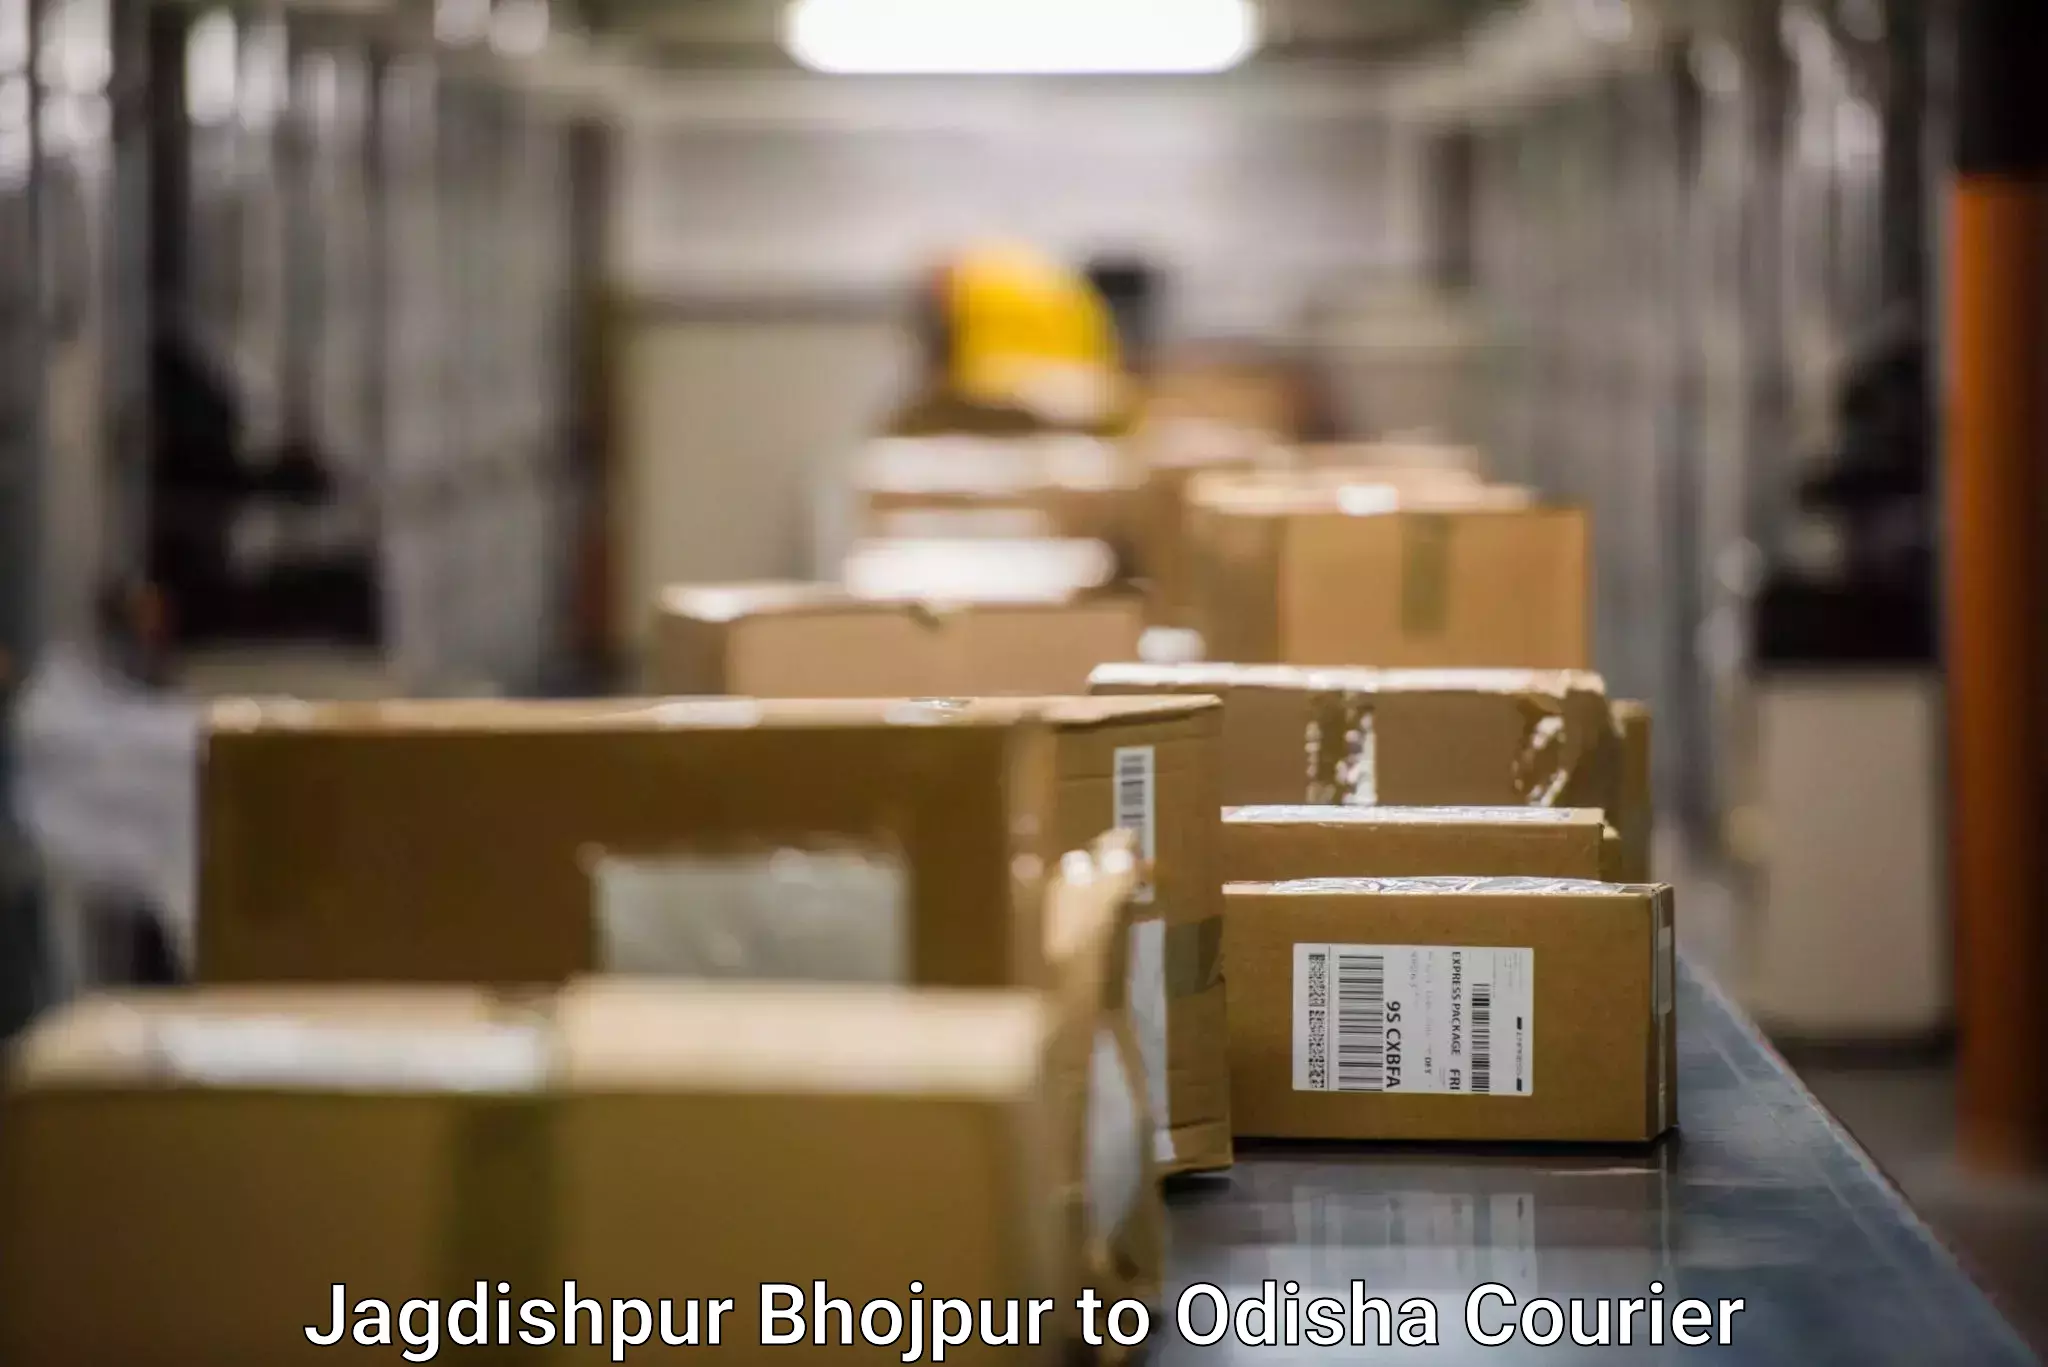 Ocean freight courier Jagdishpur Bhojpur to Kendujhar